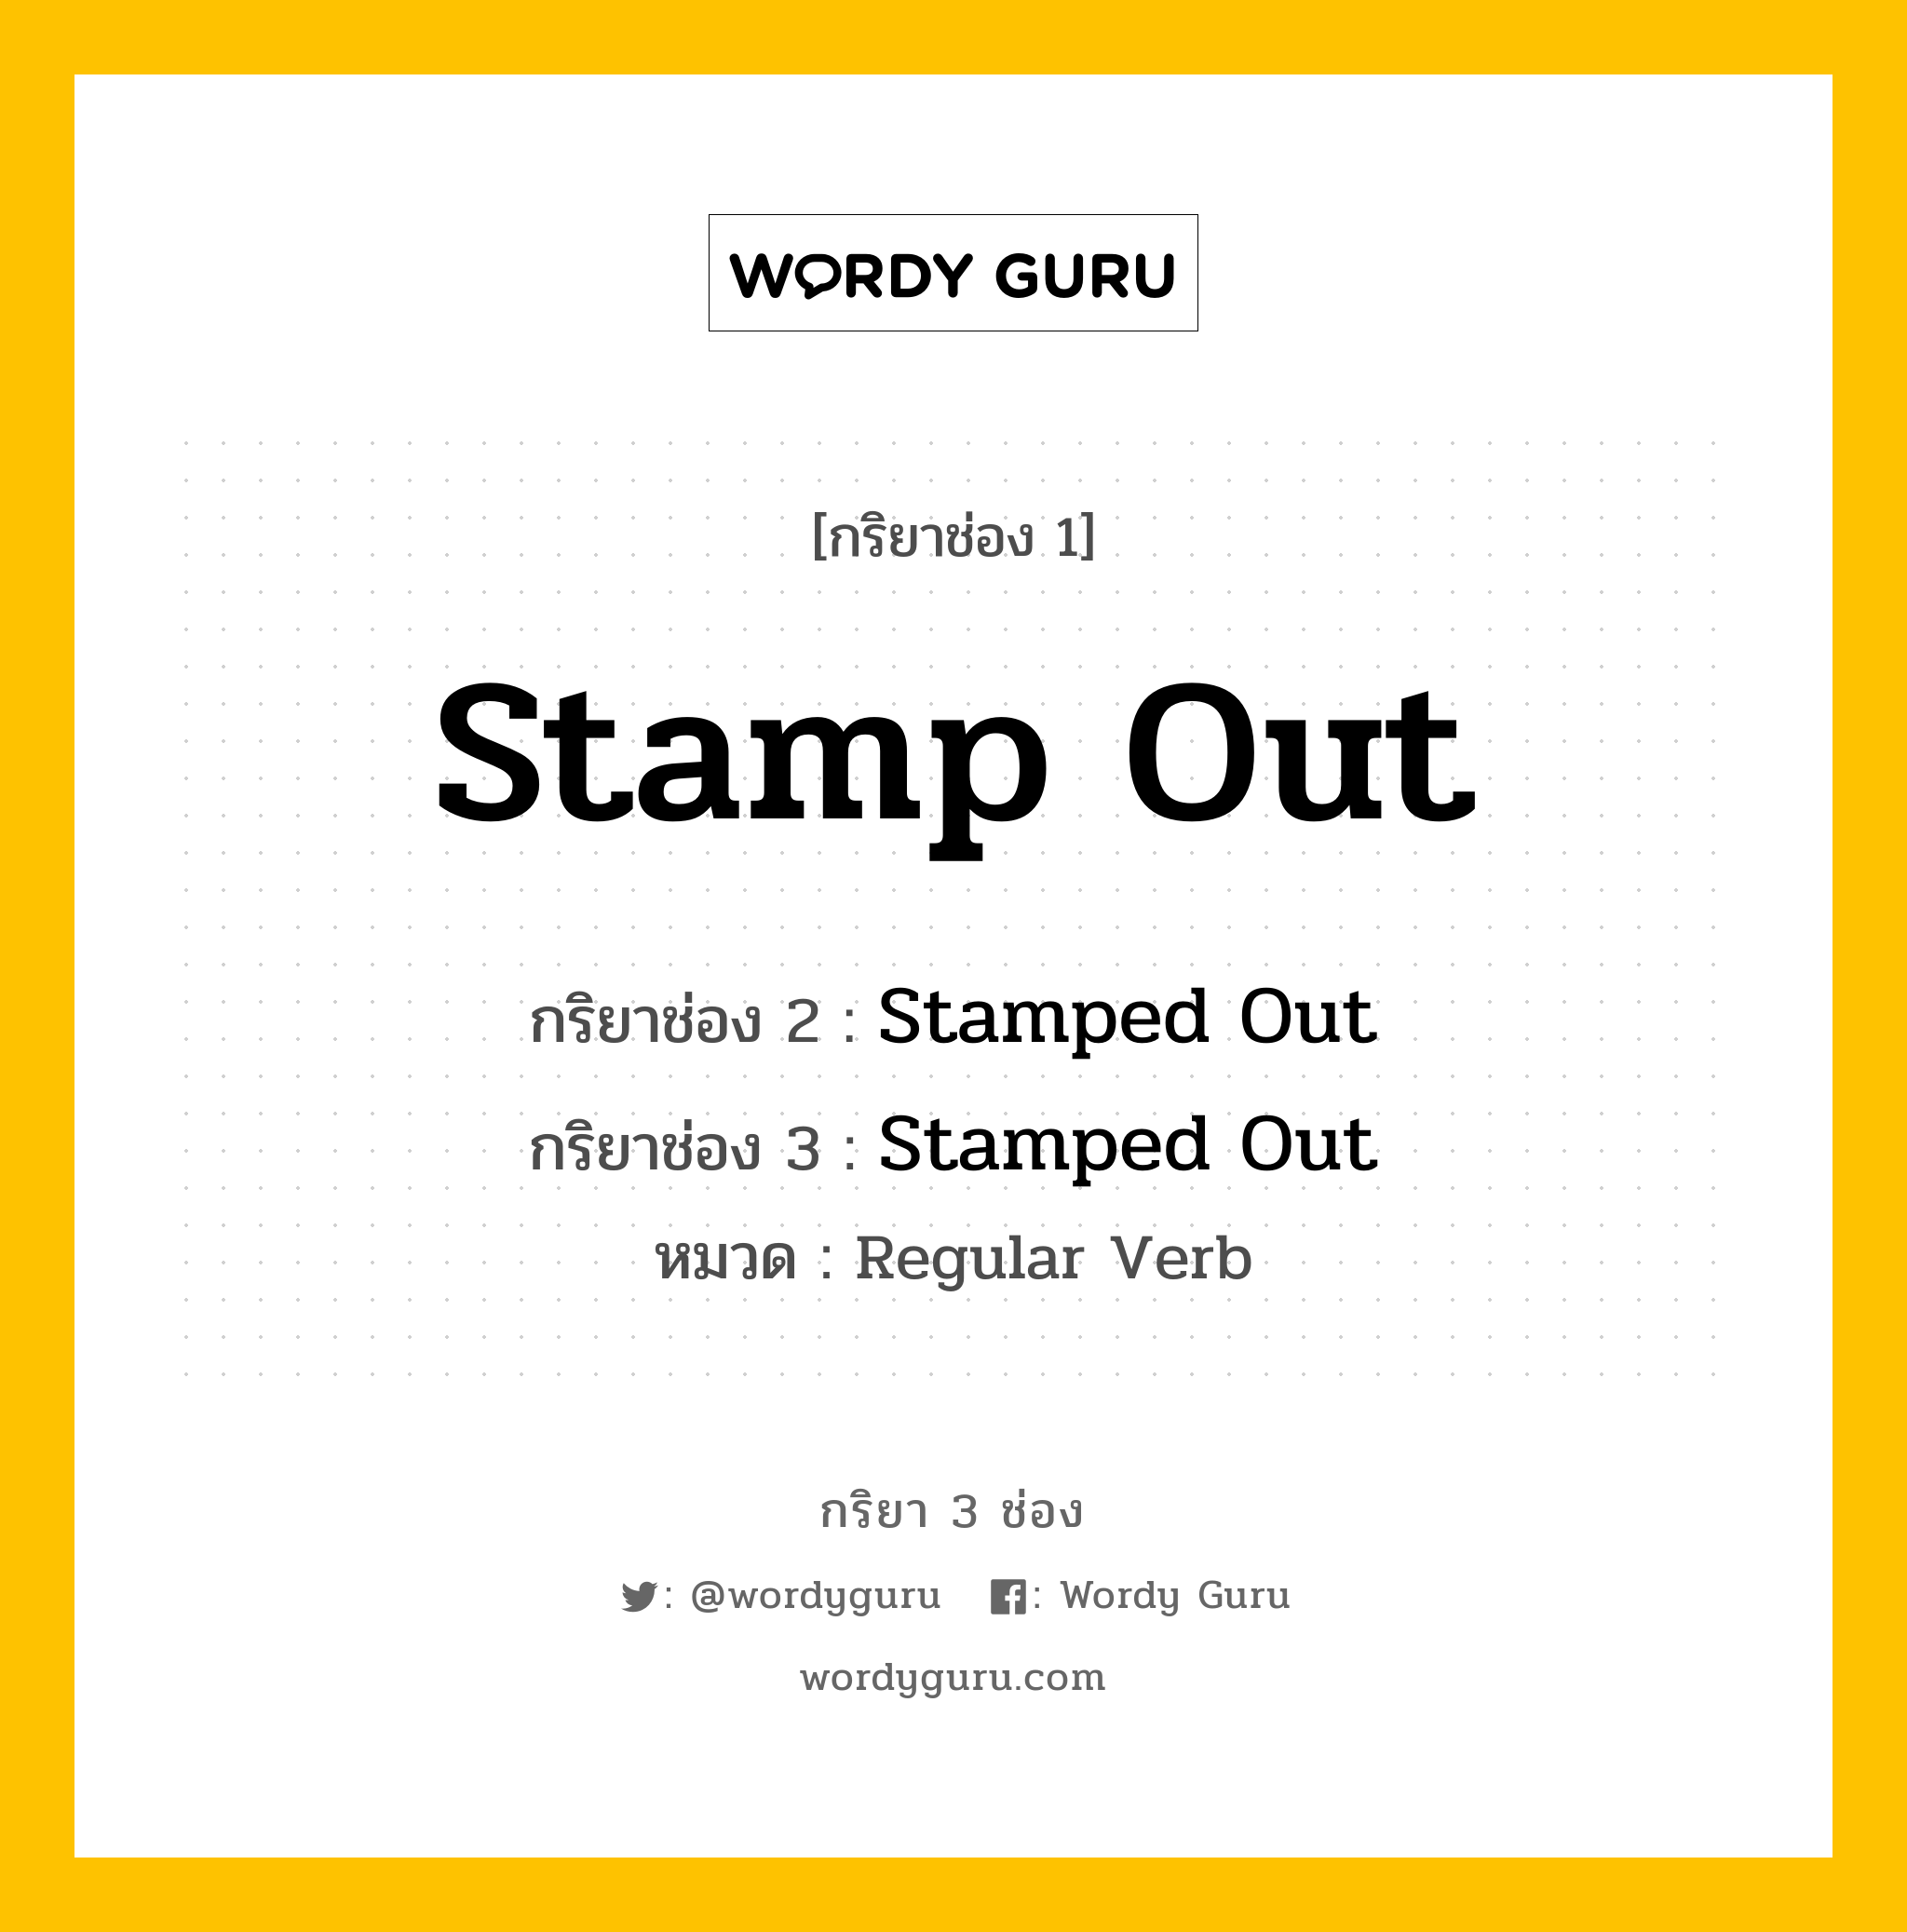 กริยา 3 ช่อง: Stamp Out ช่อง 2 Stamp Out ช่อง 3 คืออะไร, กริยาช่อง 1 Stamp Out กริยาช่อง 2 Stamped Out กริยาช่อง 3 Stamped Out หมวด Regular Verb หมวด Regular Verb